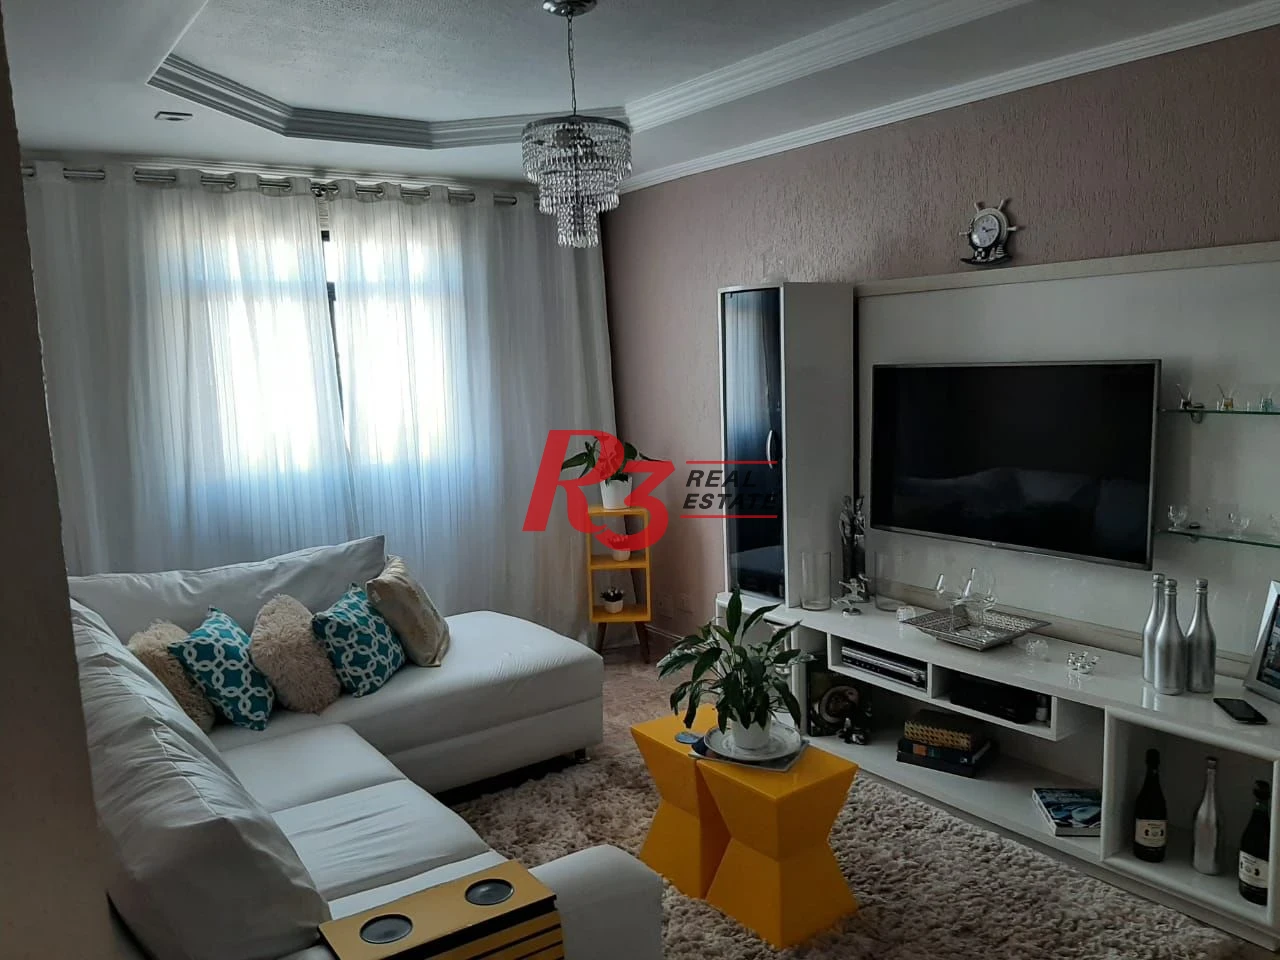 Apartamento à venda, 60 m² por R$ 420.000,00 - Encruzilhada - Santos/SP